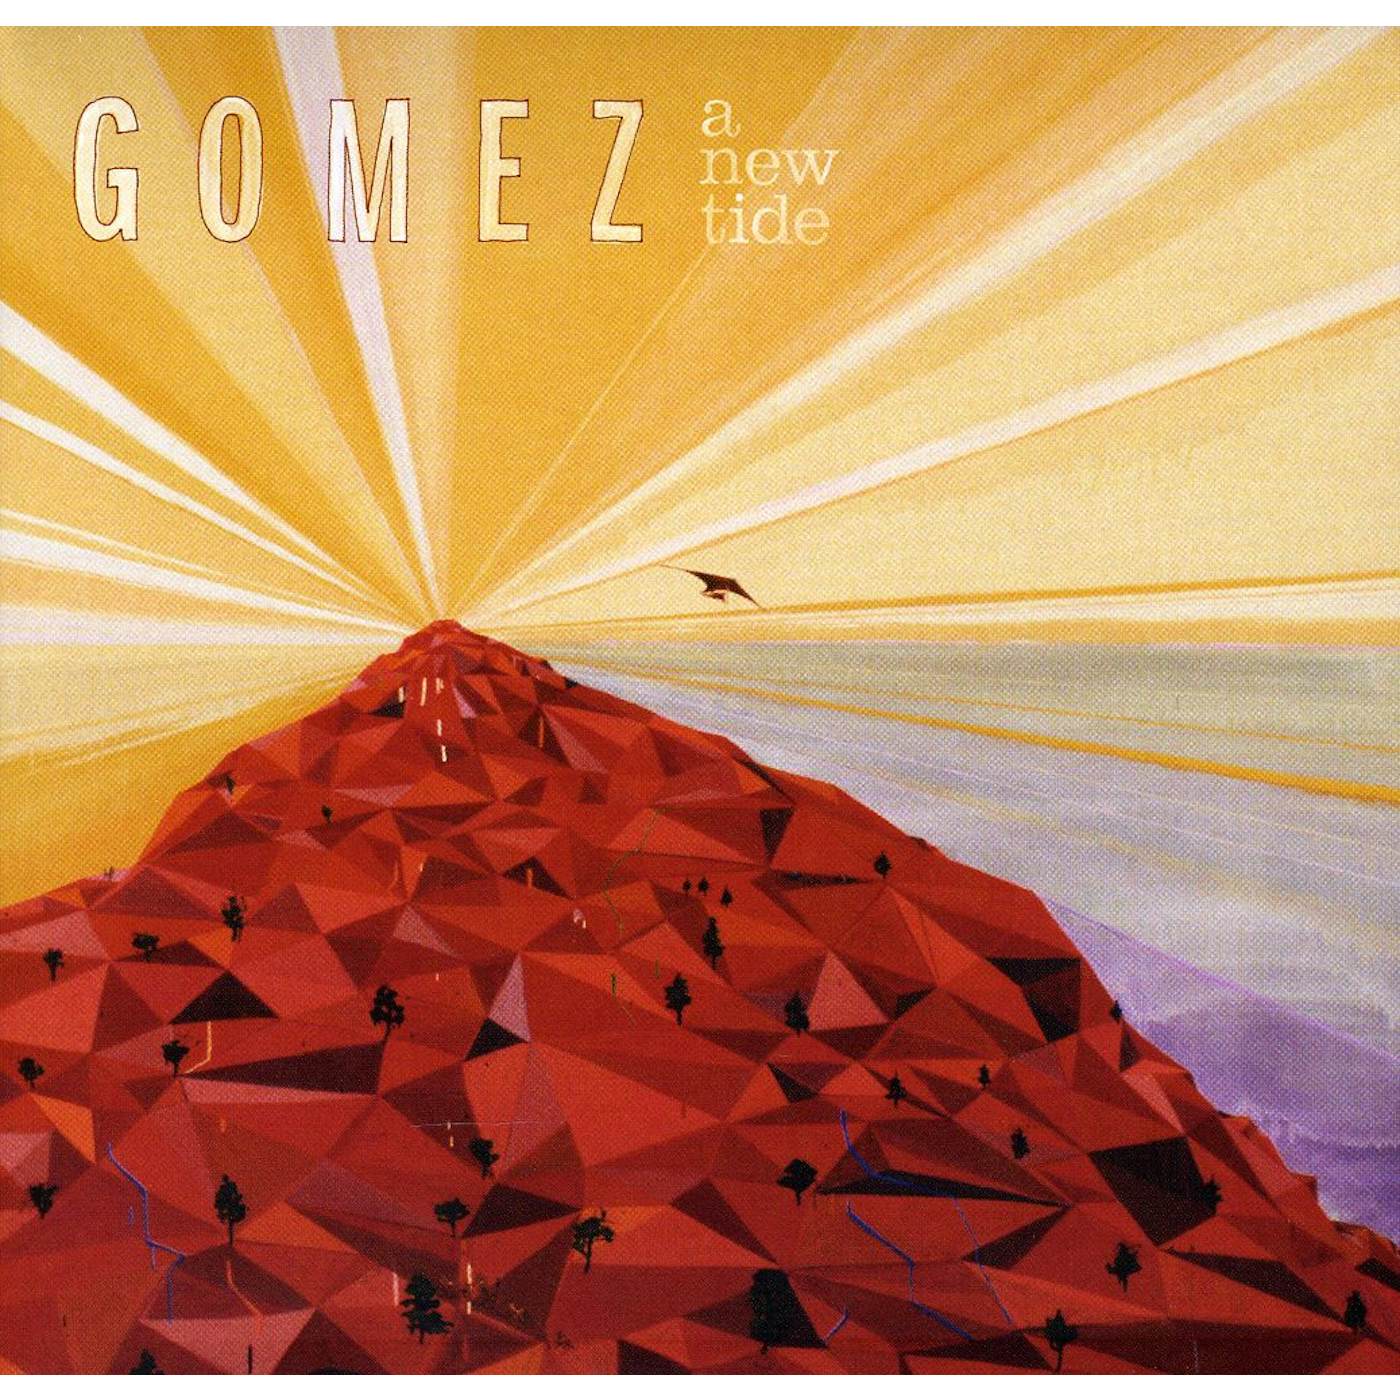 Gomez NEW TIDE CD